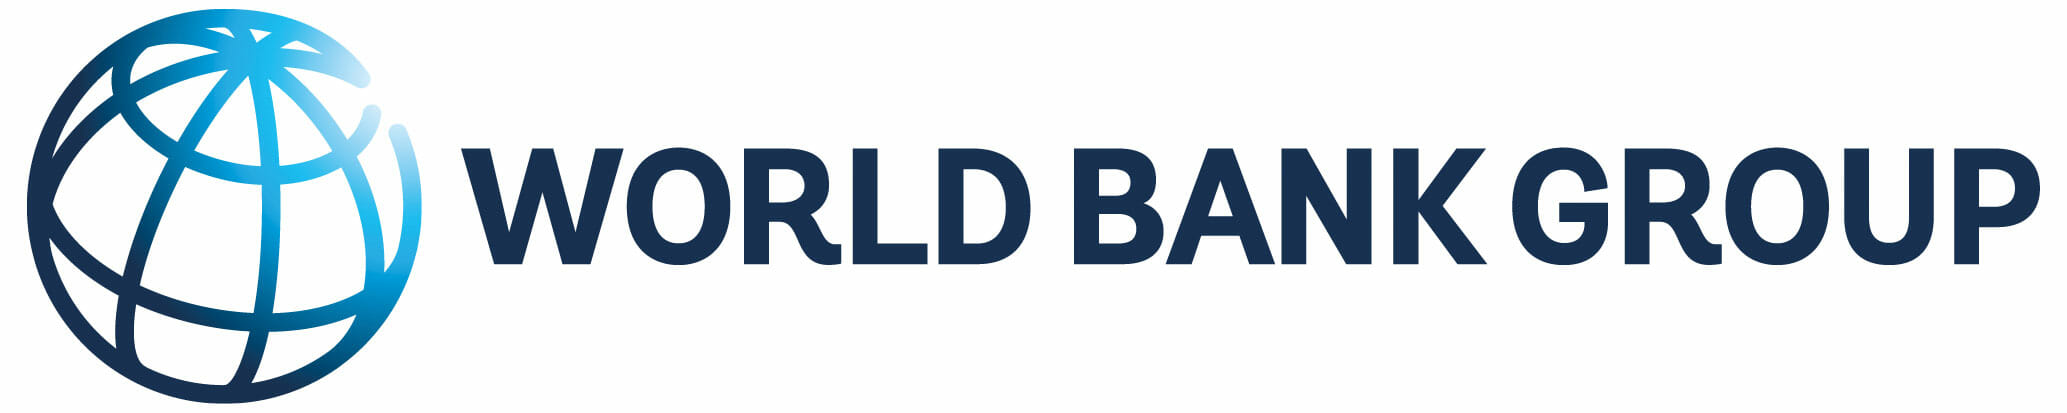 WBG-logo